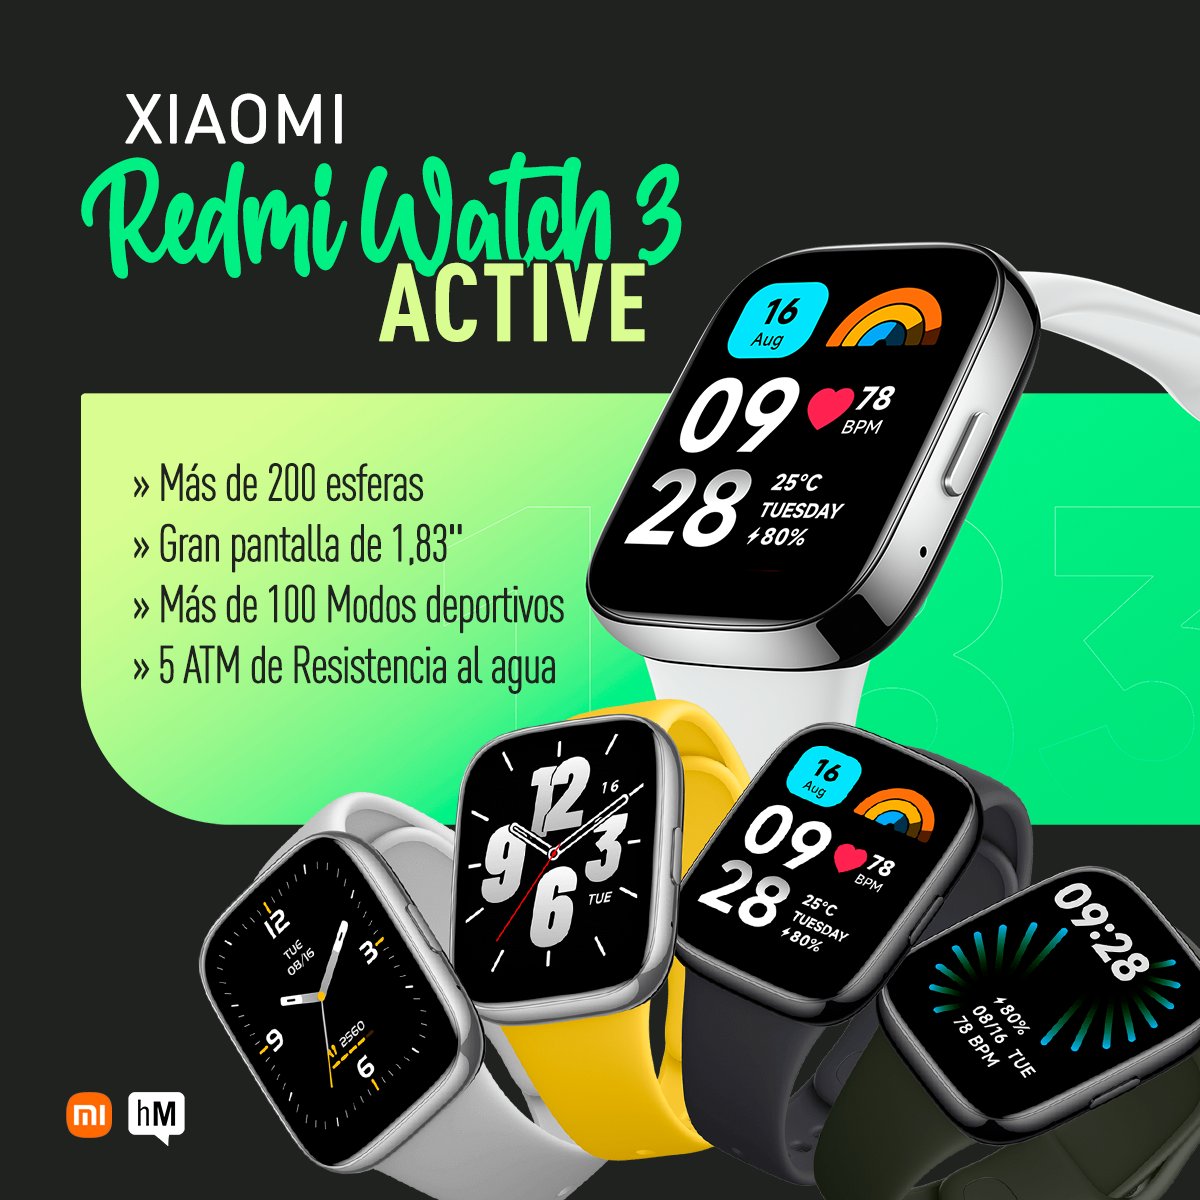 Esta  primavera🌼 será la definitiva para ACTIVARTE con el nuevo Redmi Watch 3  Active:
Encuentra #TuTiendaholaMOBI aquí 👉holamobi.com/tiendas/y descubre todas las bondades de este magnífico #Smartwatch
#holamobi #xiaomi #redmiwatch3